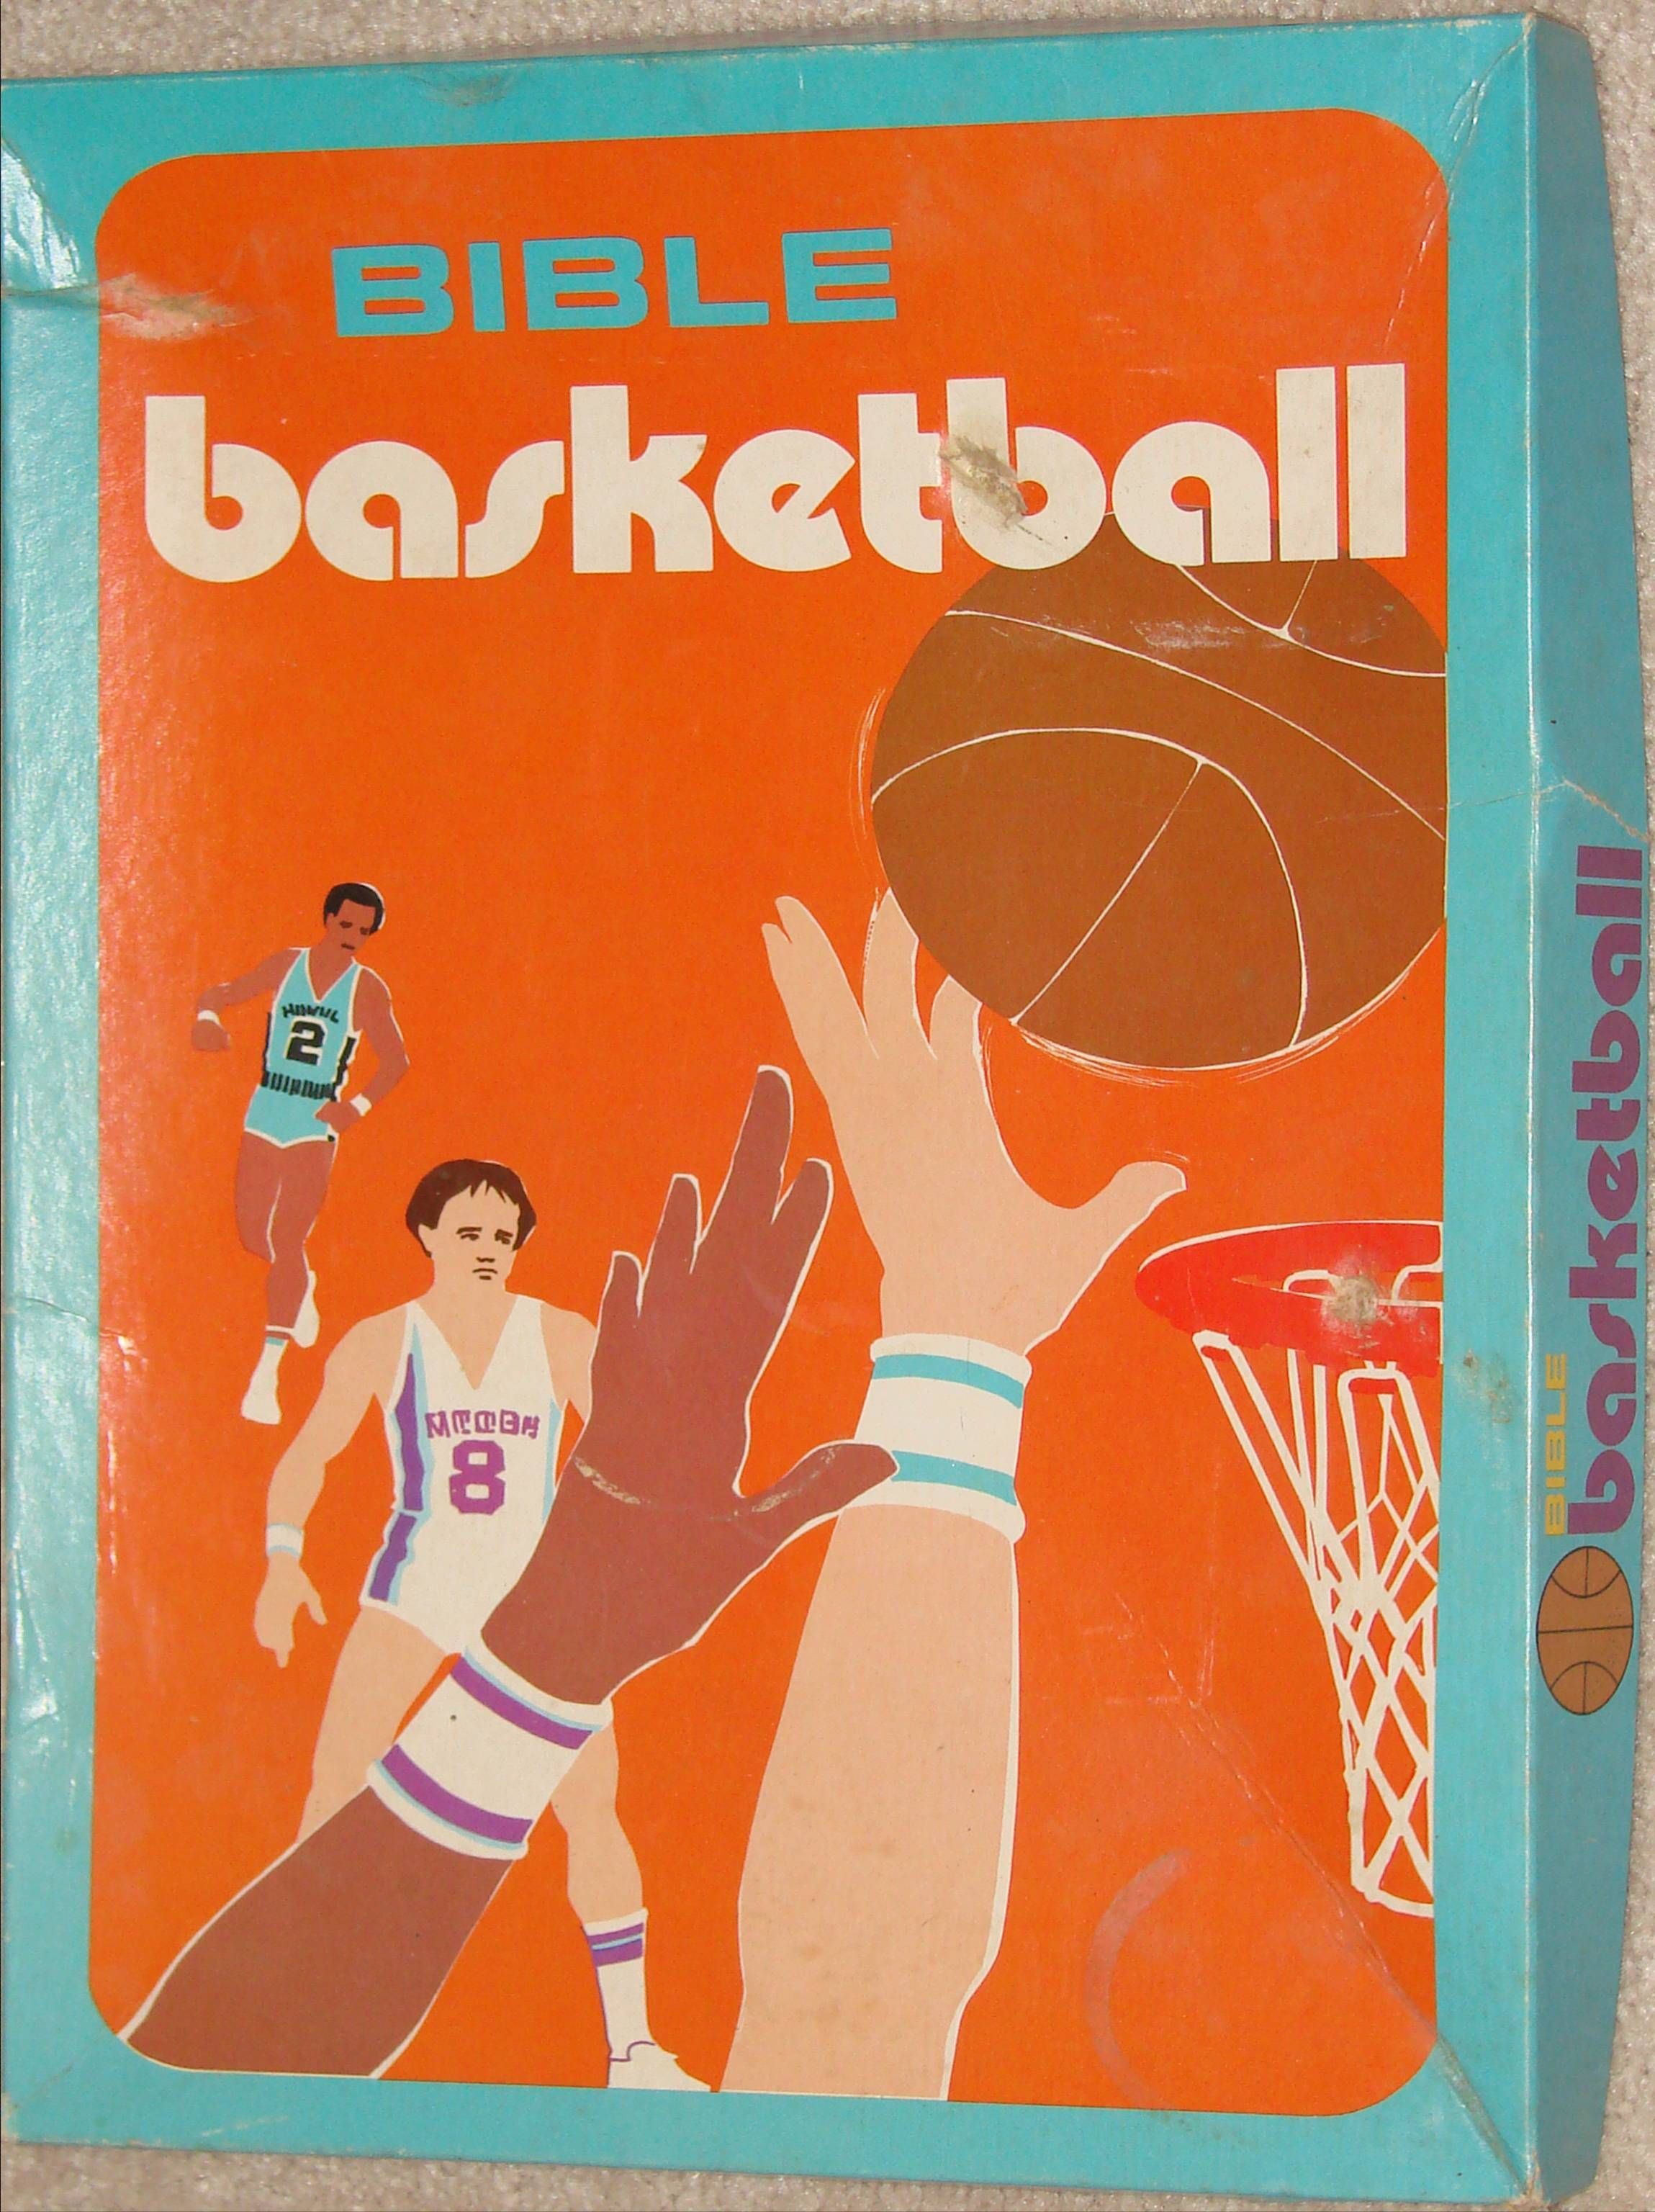 Bible Basketball